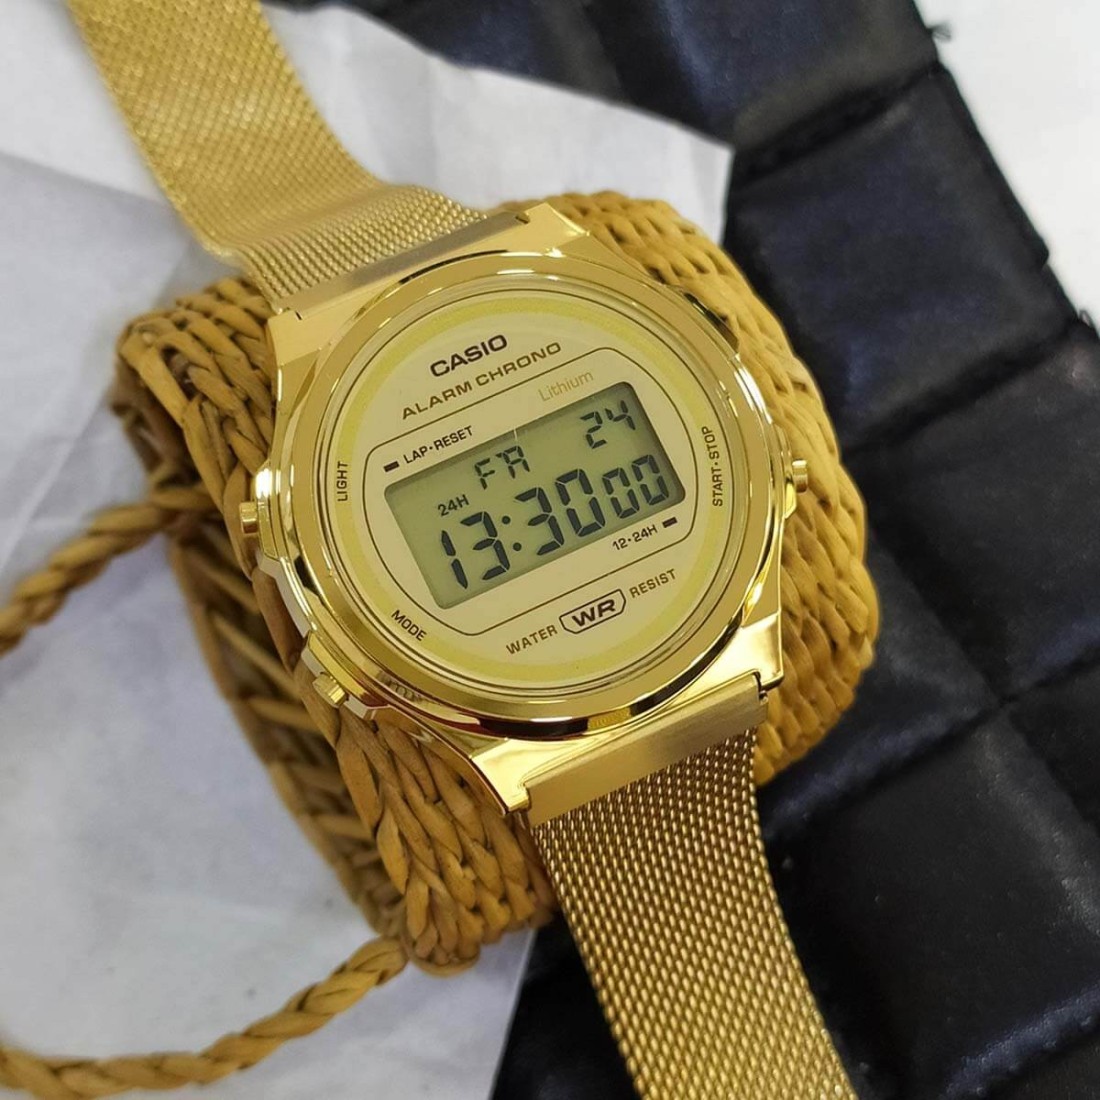 Reloj vintage Casio dorado con brillantes en la esfera — Miralles